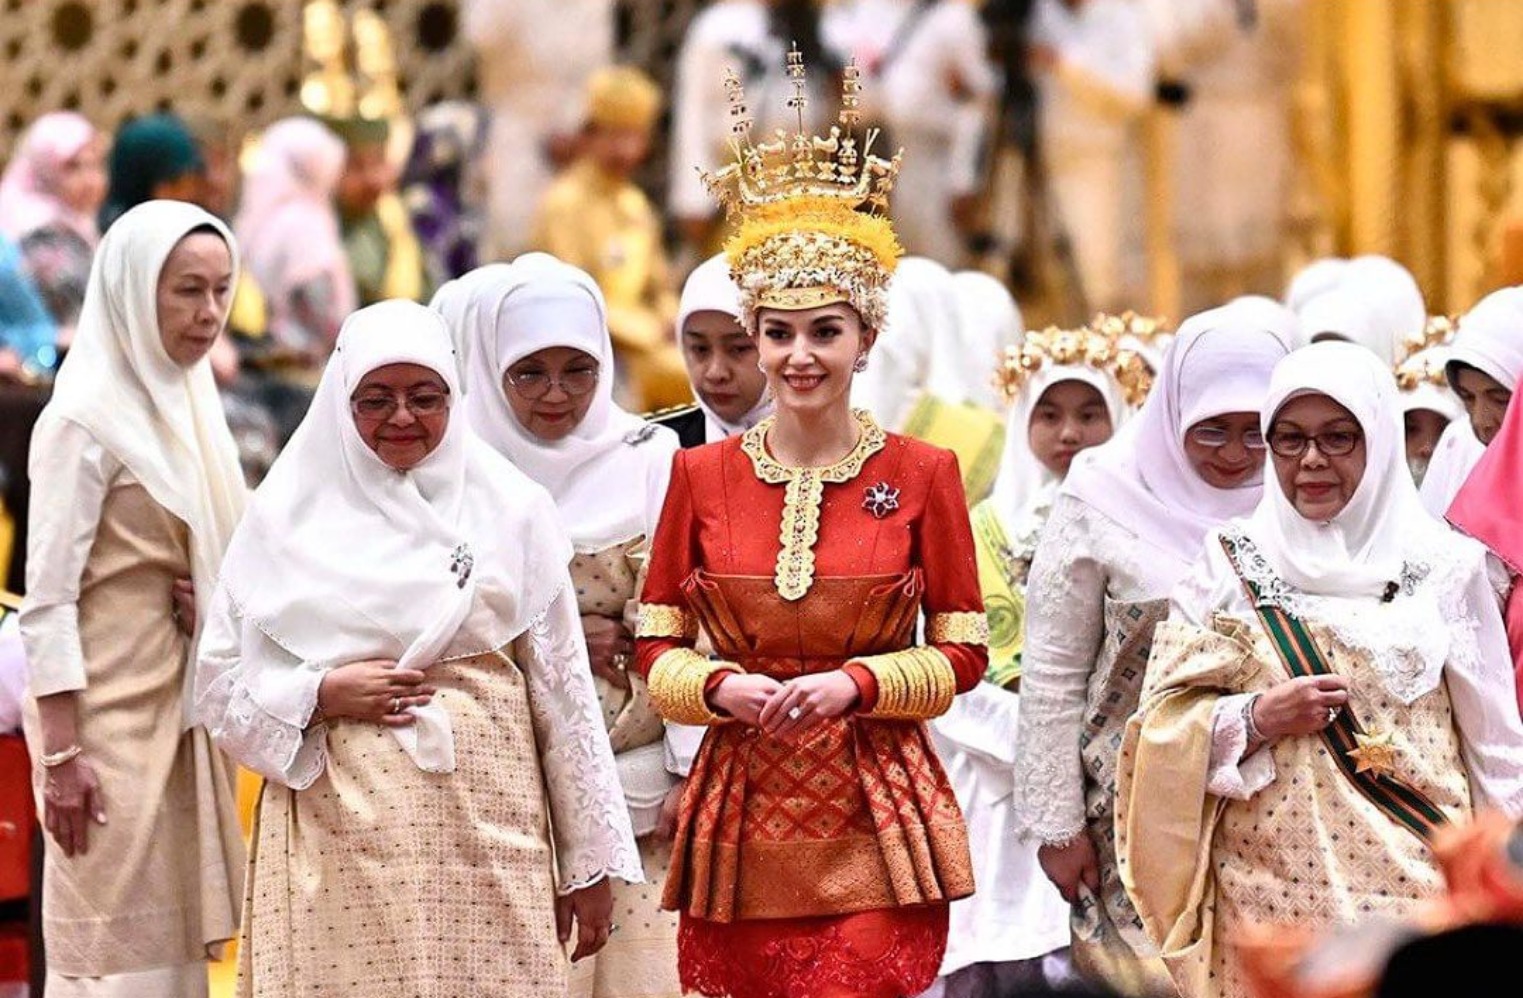 Prosesi Pernikahan Pangeran Brunai Abdul Mateen yang Mewah (Sumber gambar: Instagram.com/infodept.bn)